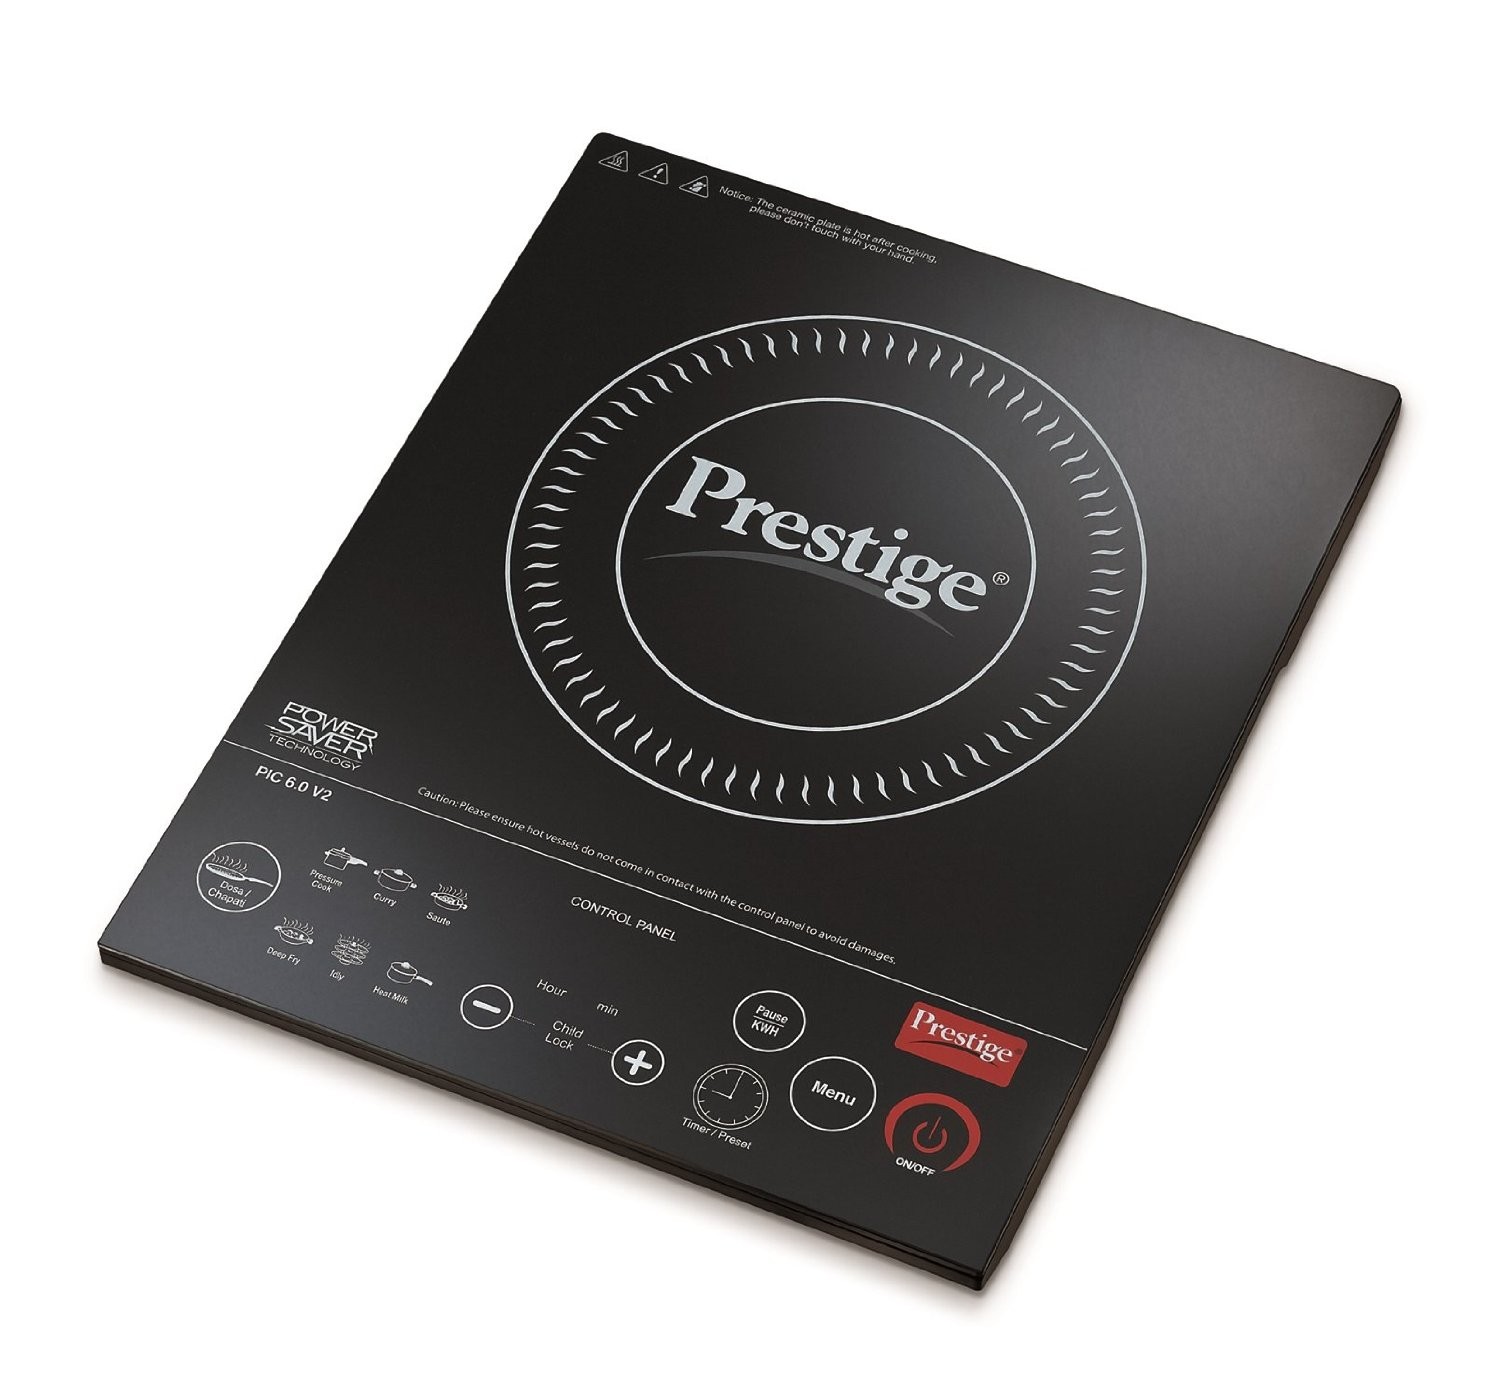 Prestige Induction Cooktop Pic 6.0 V3 